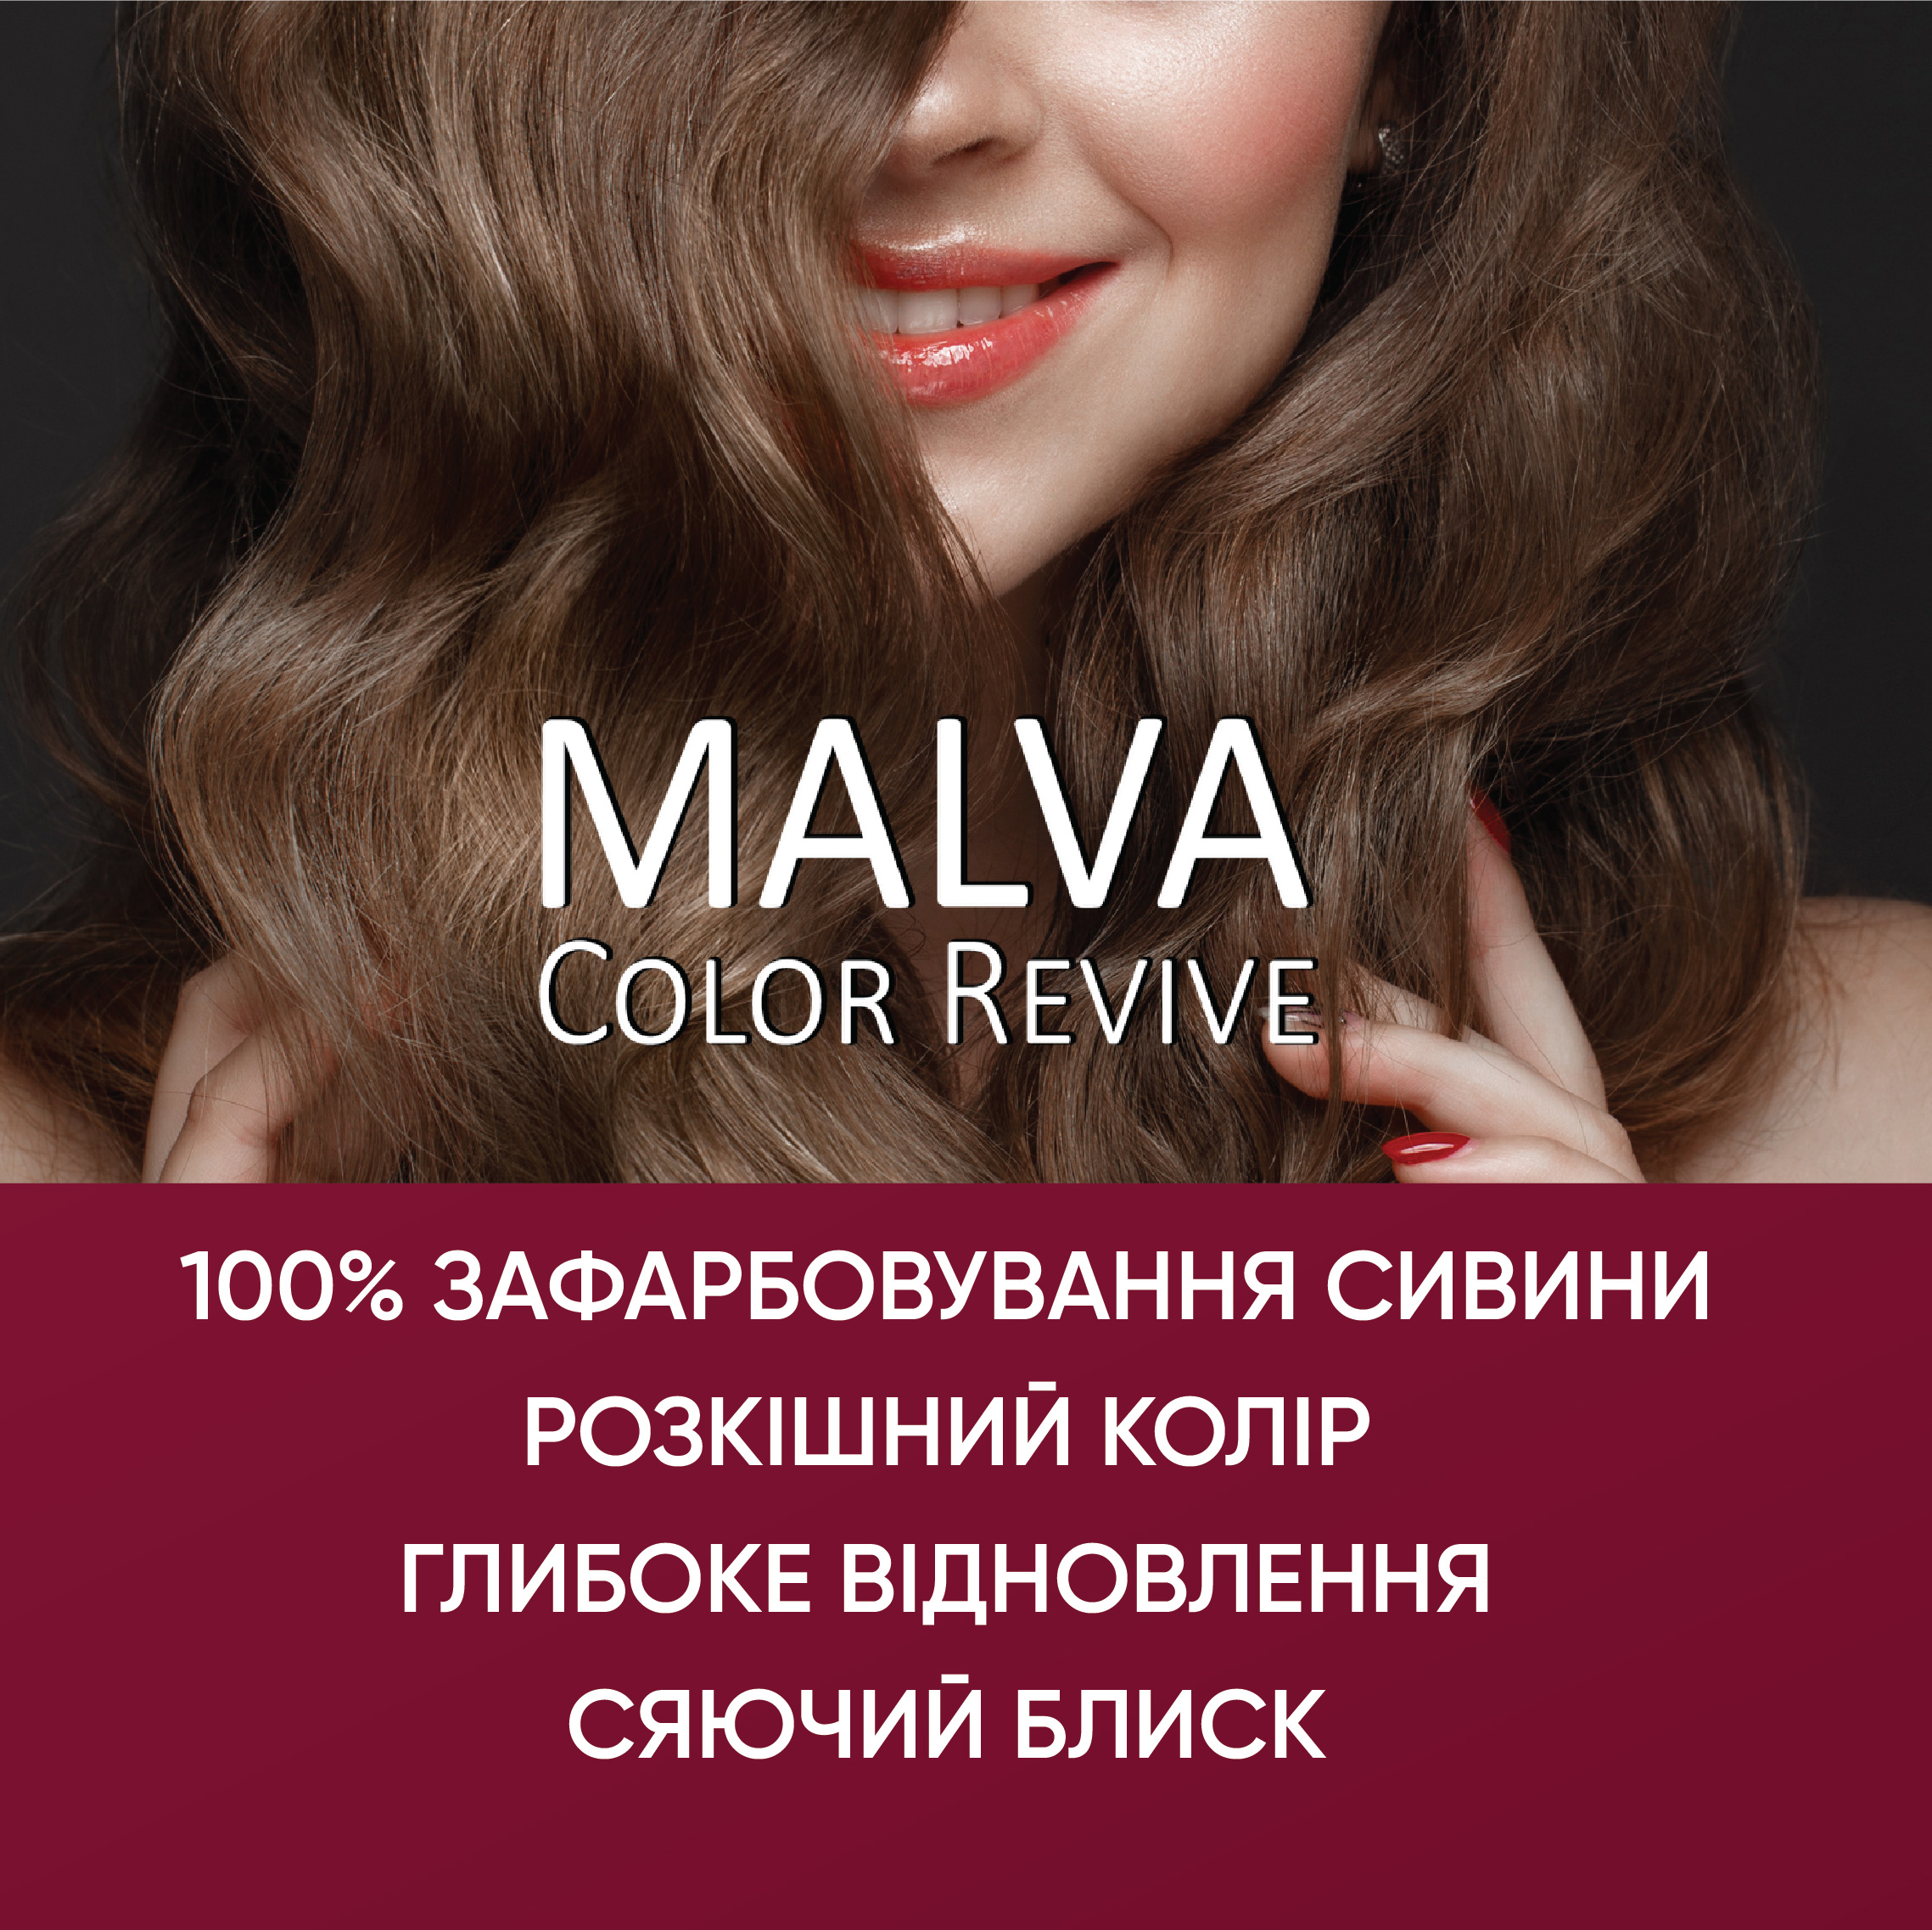 Устойчивая крем-краска для волос Malva Color Revive оттенок 012 Светло-русый - фото 4